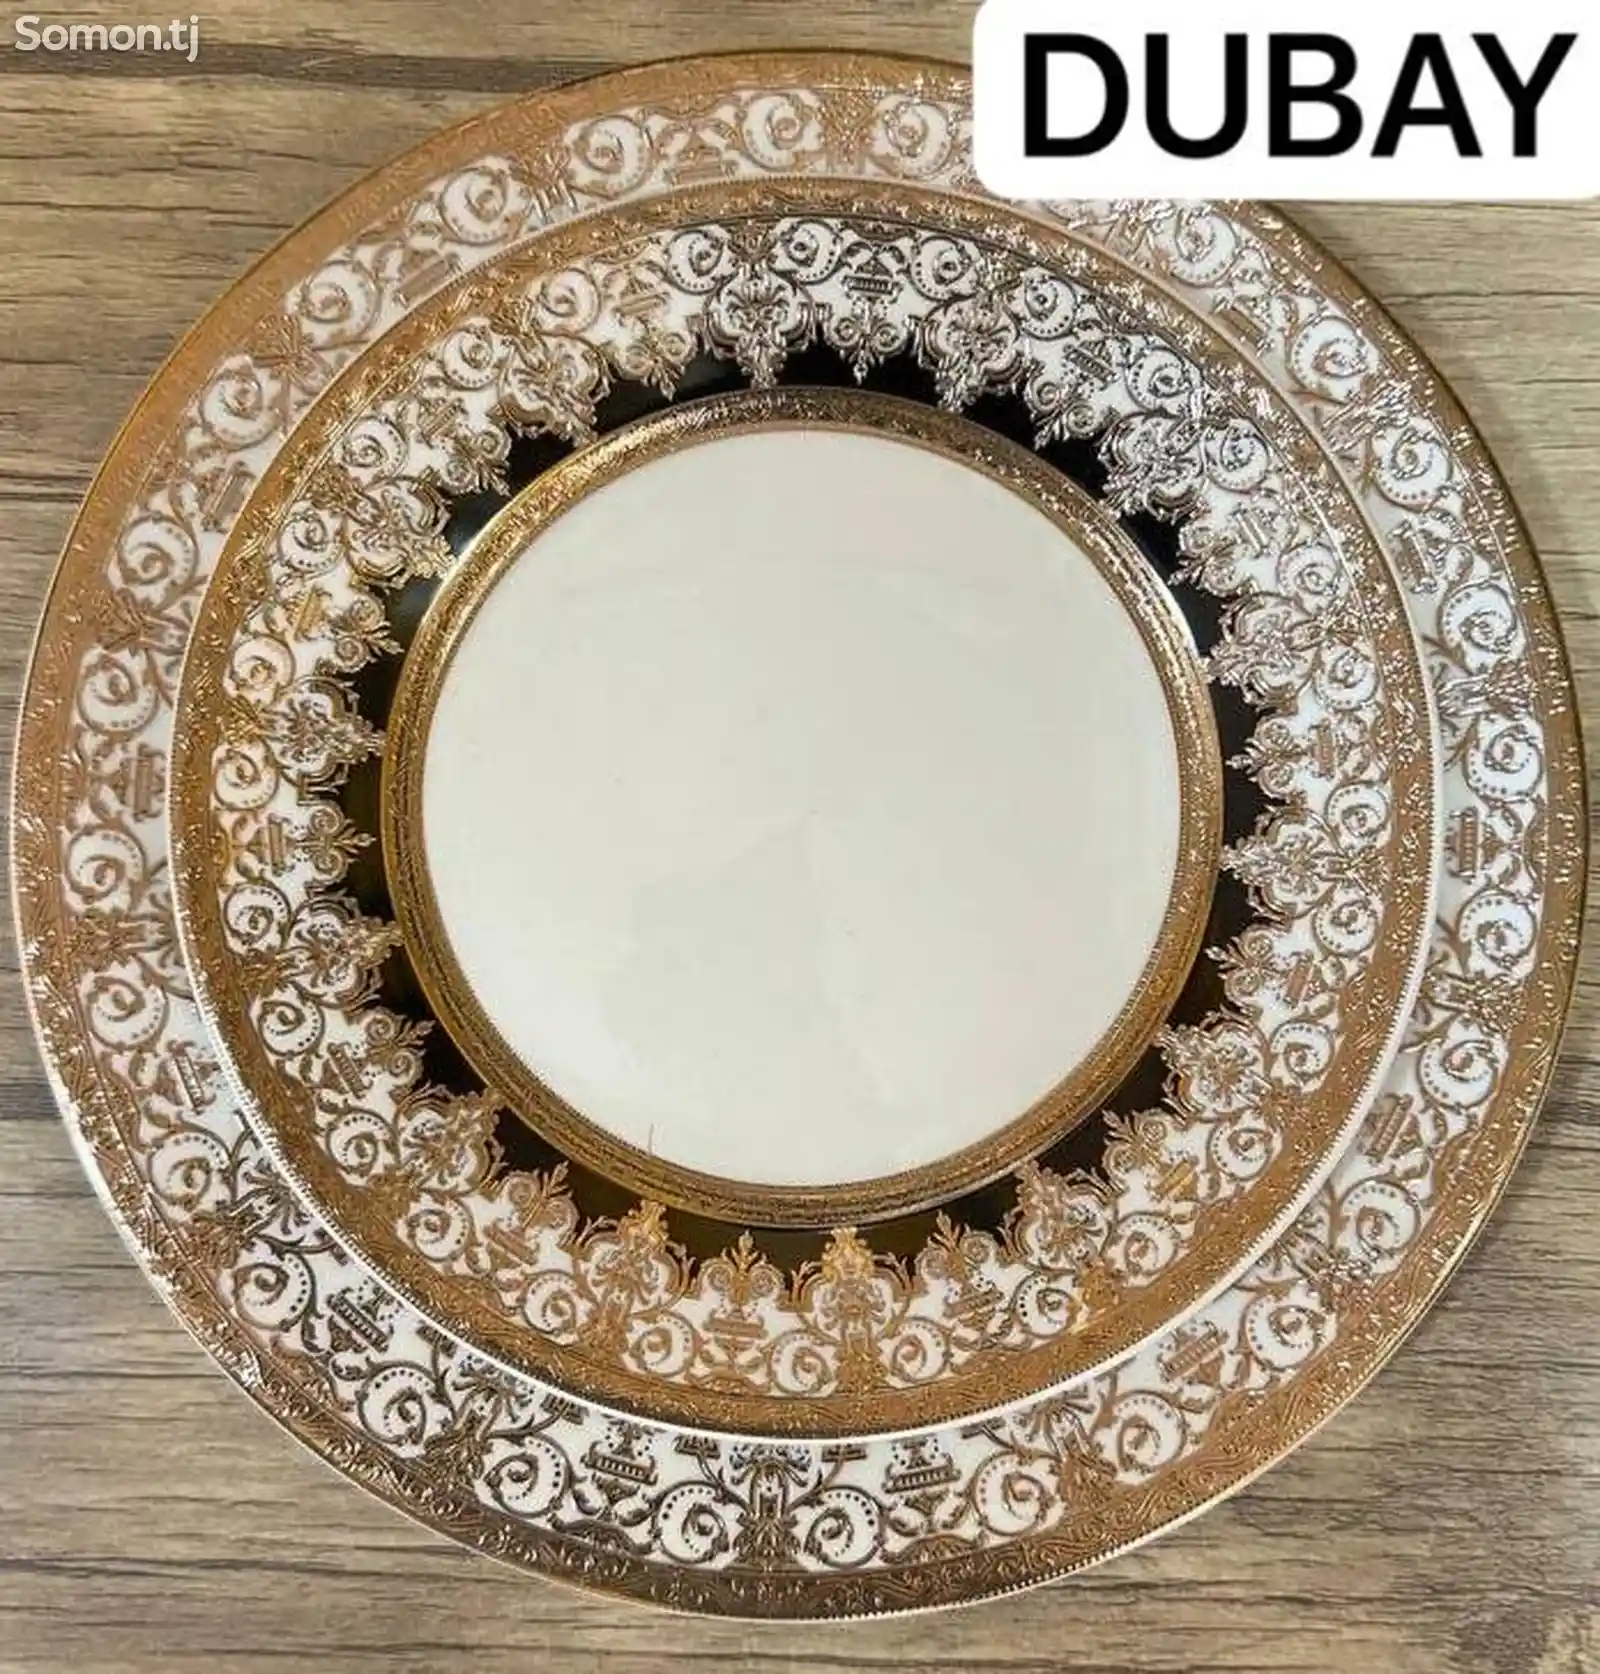 Набор посуды Dubay-06 комплект 6-7